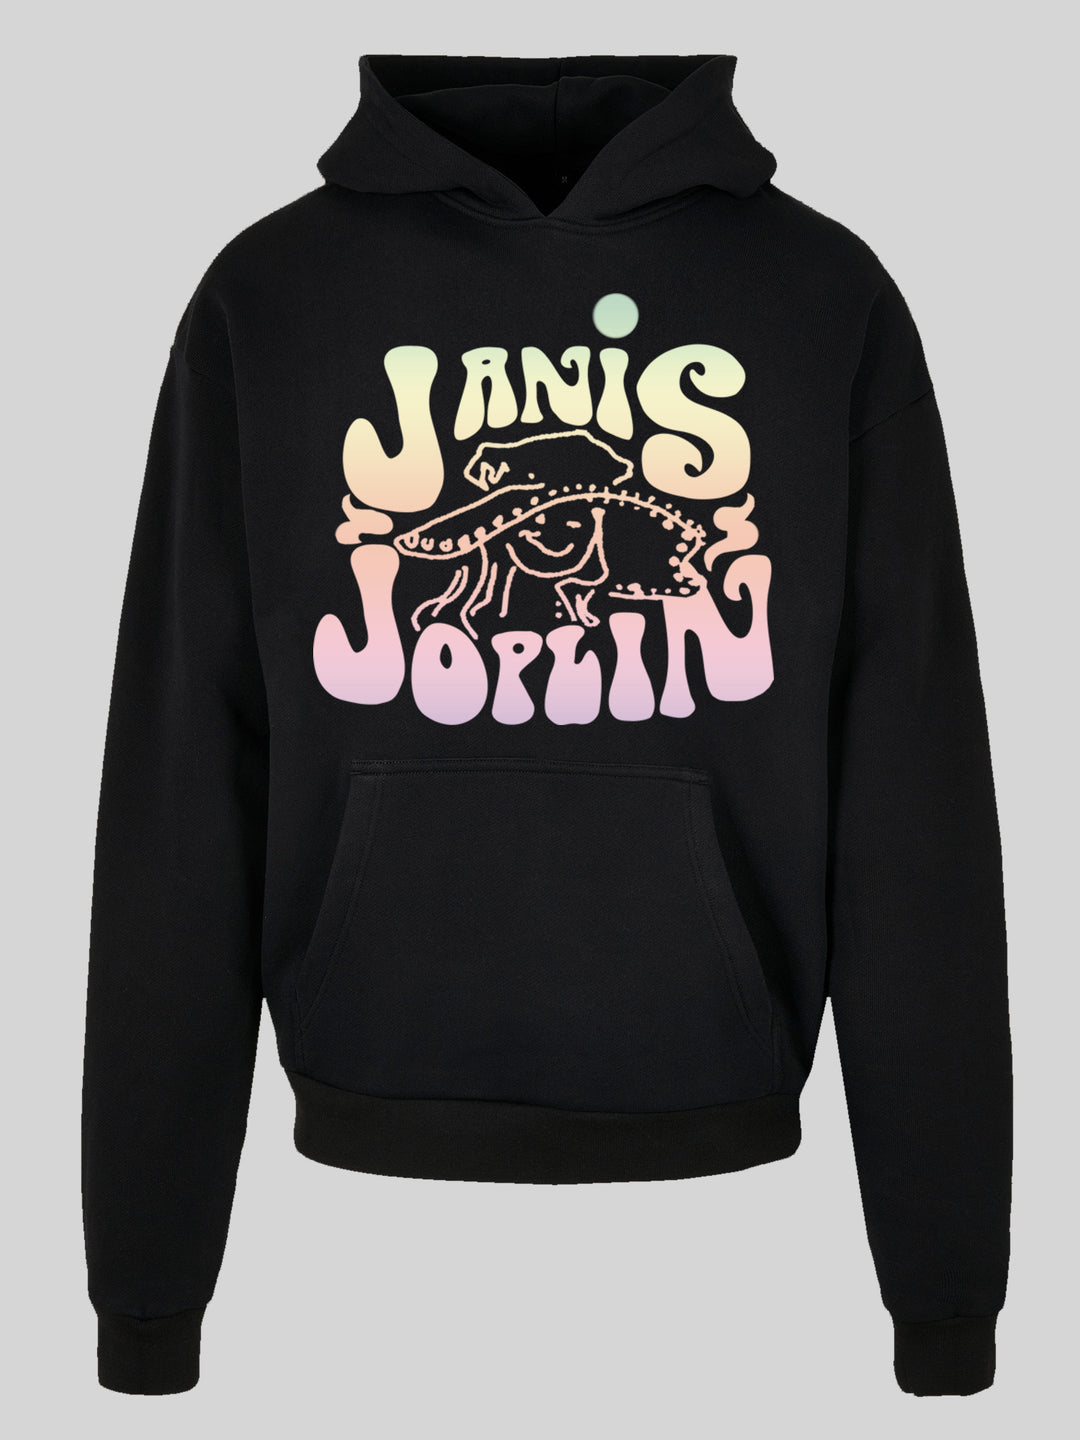 Janis Joplin Pastel Logo + with Ultra Heavy Hoody